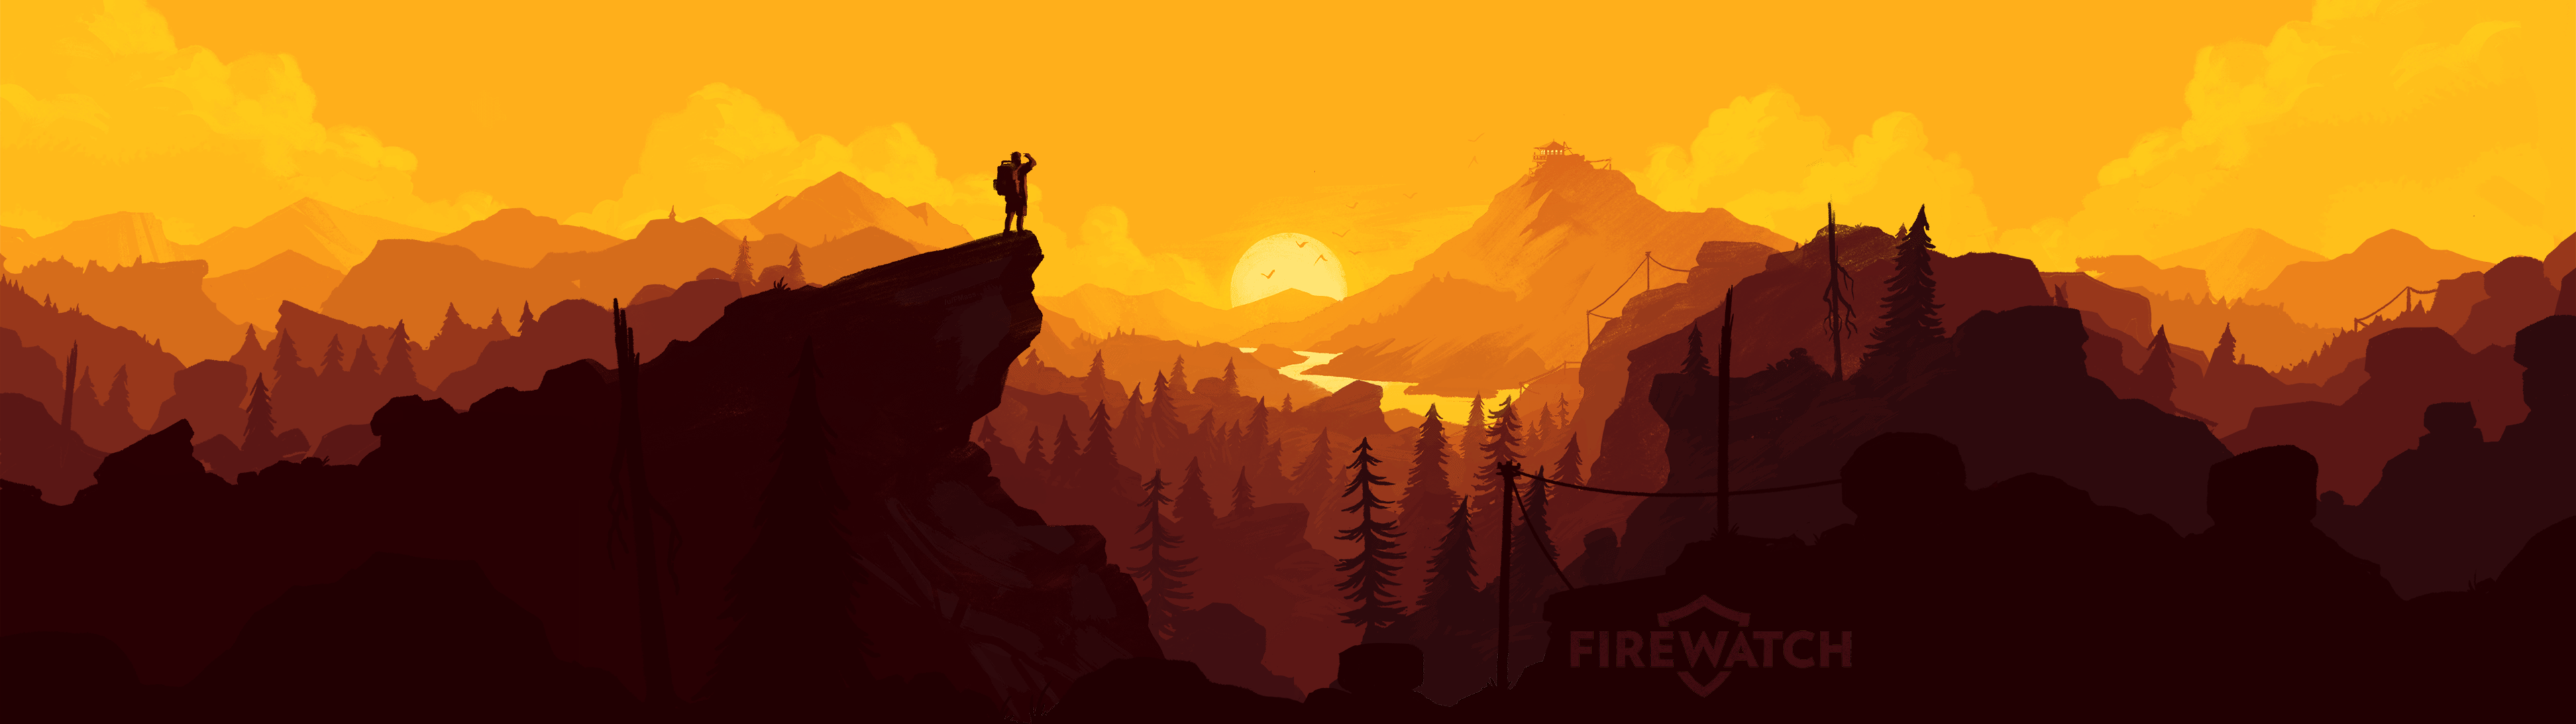 Firewatch Ps Game High Definition Wallpaper Art